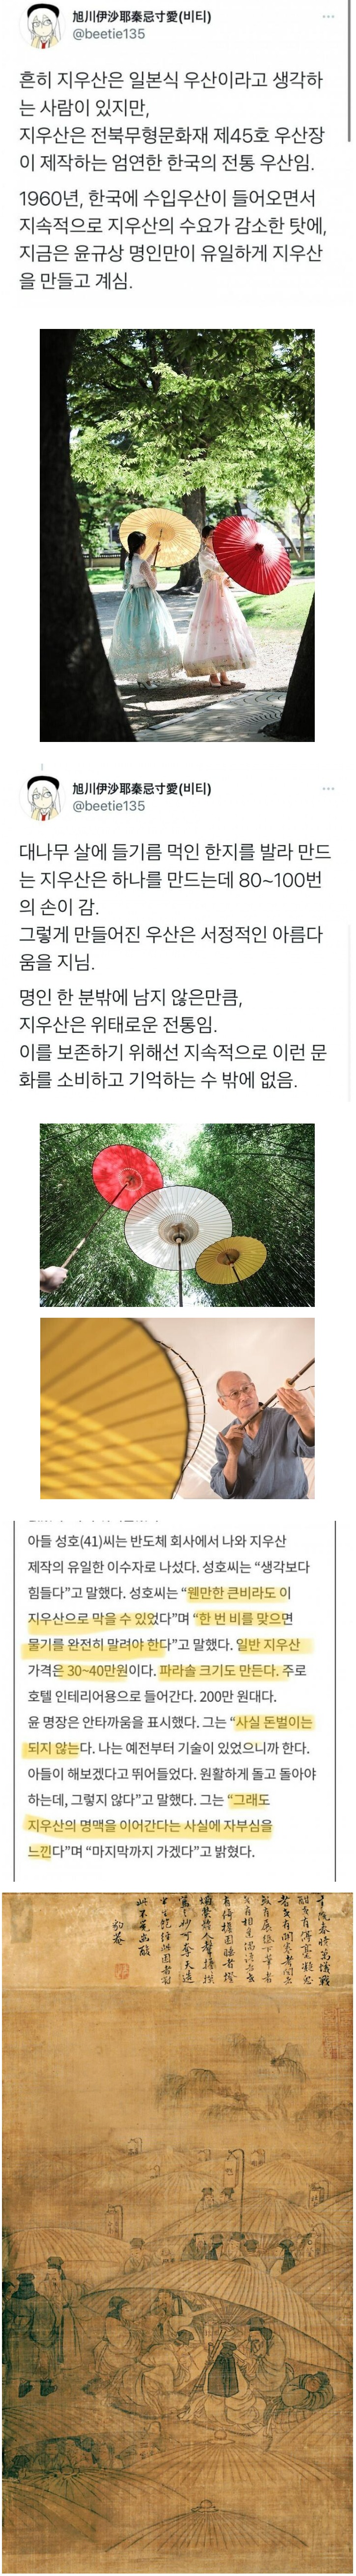 한국의 전통 우산